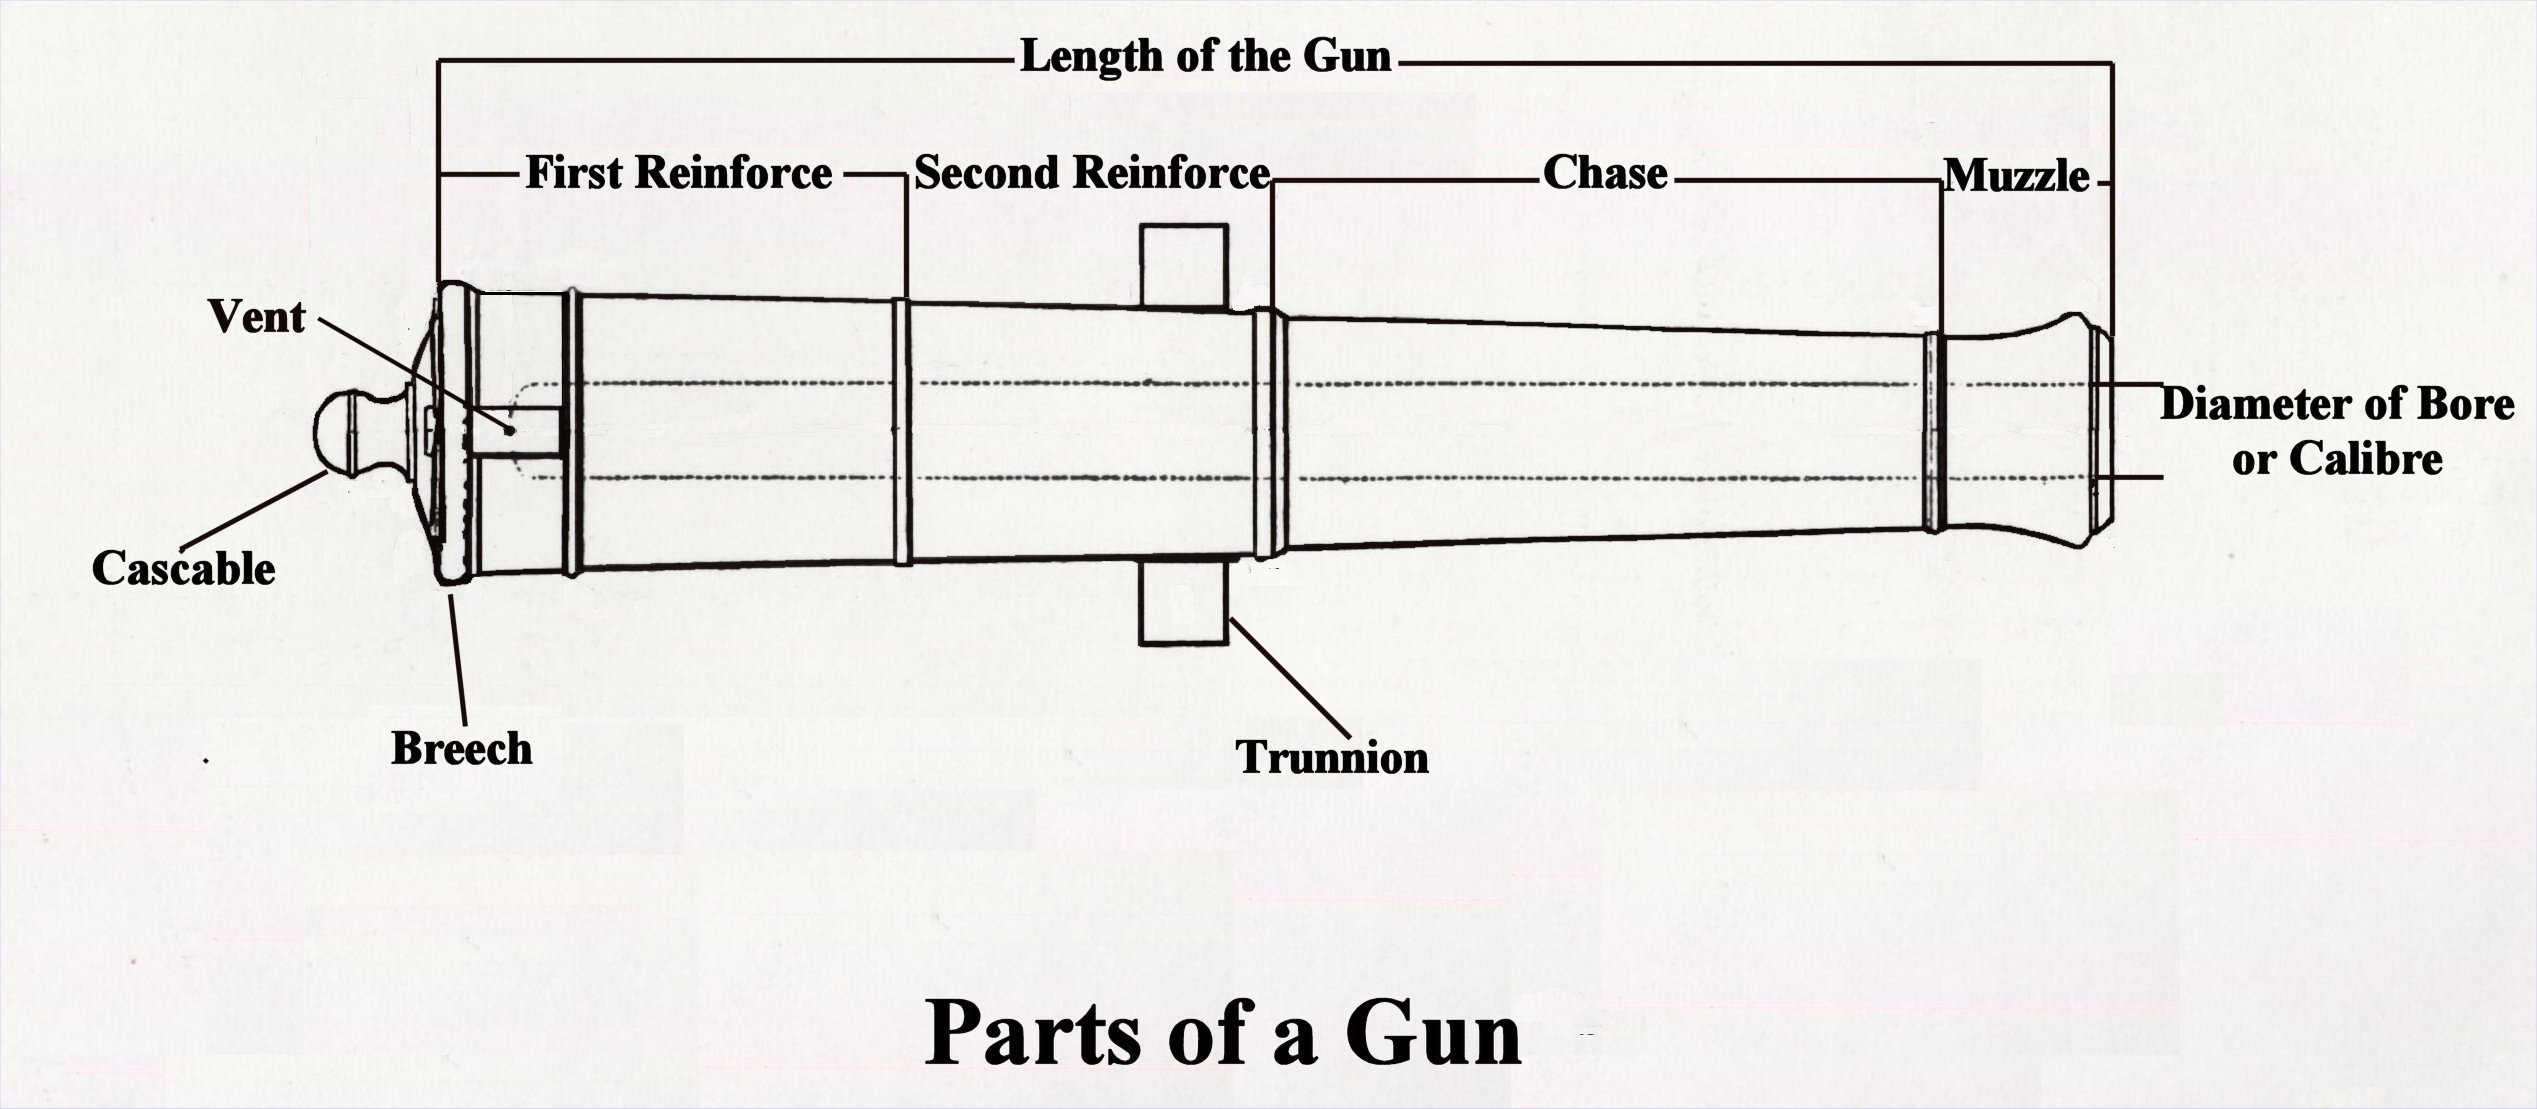 Parts of a Gun